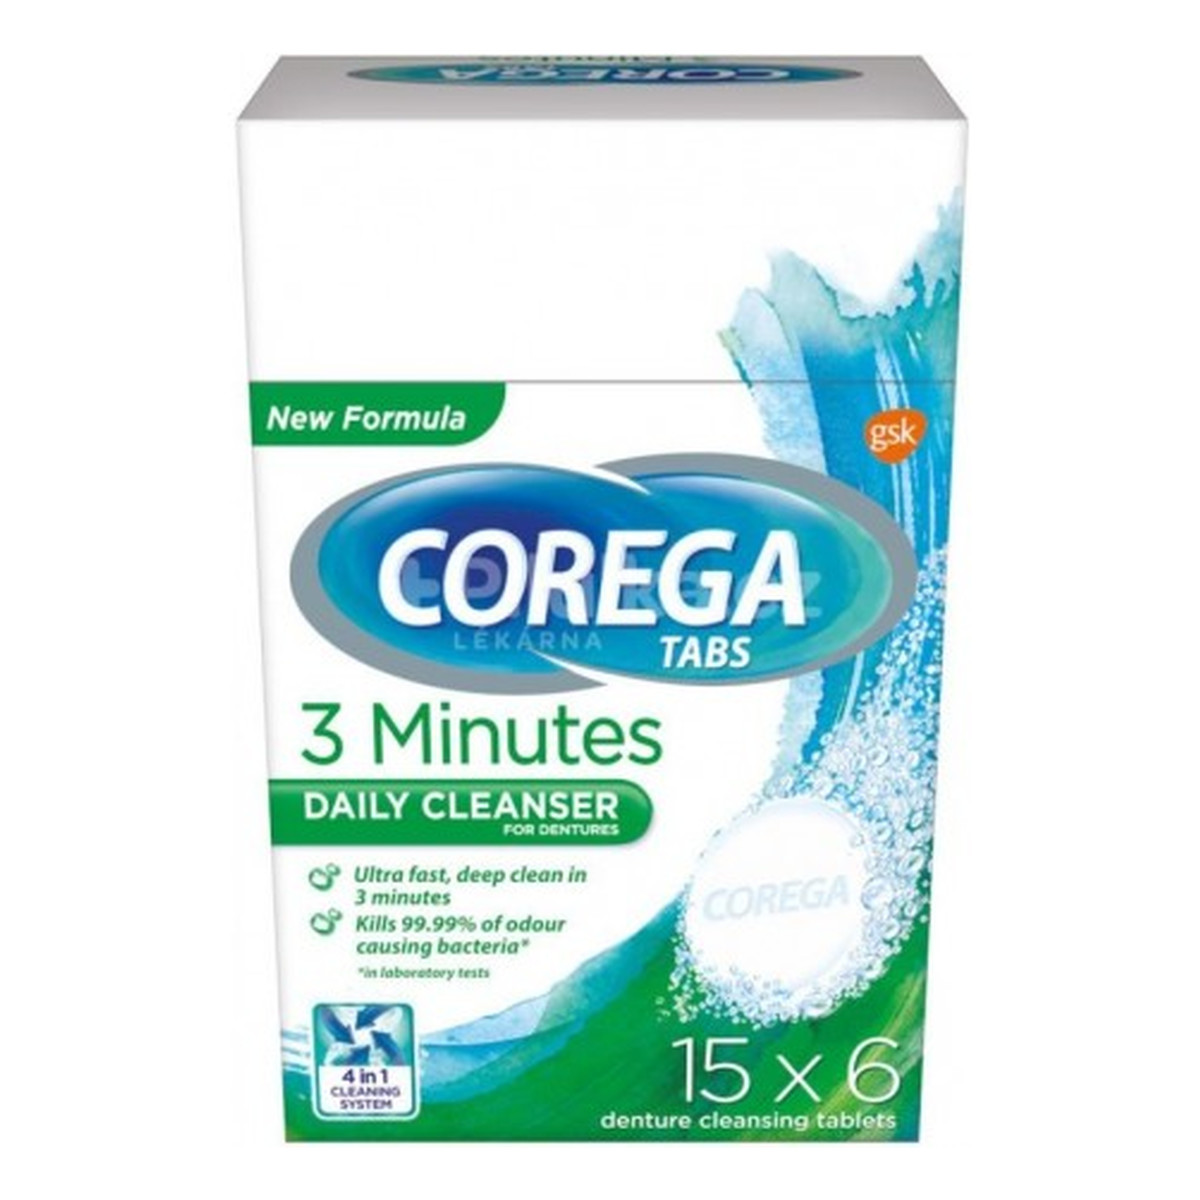 Corega Tabs Tabletki czyszczące do protez 15x6 tabletek